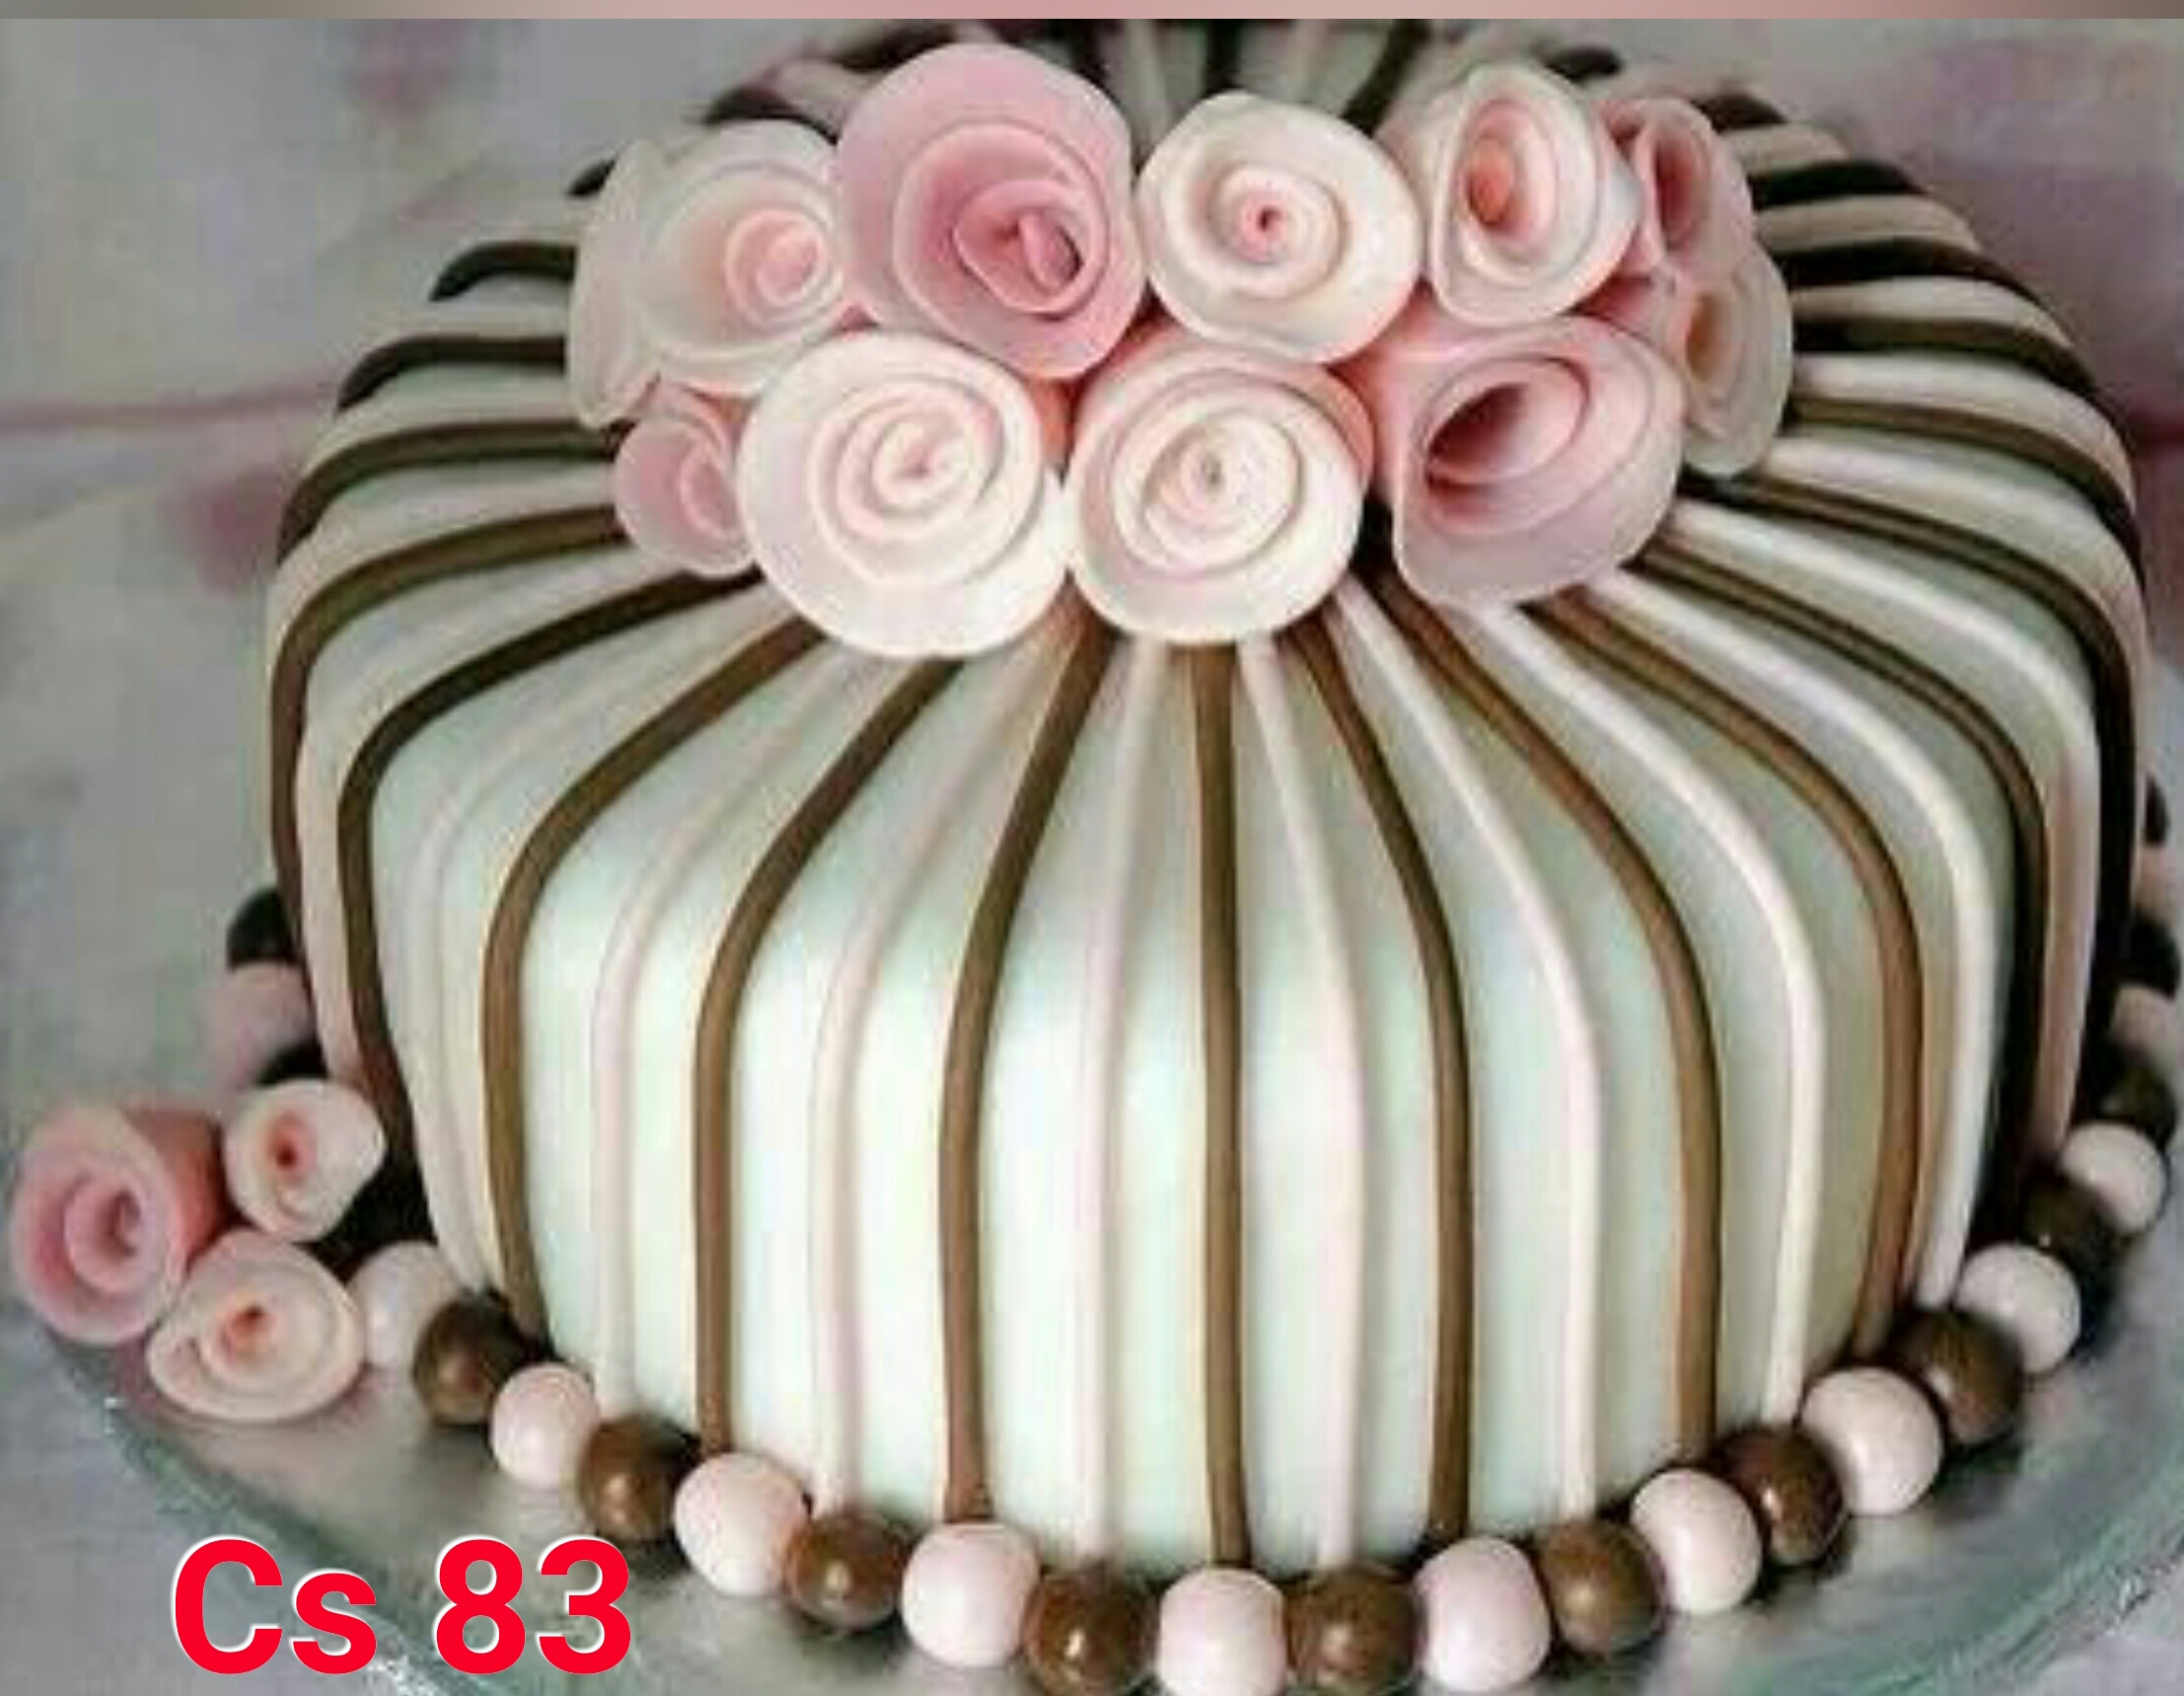 Красивые торты на день рождения девушке